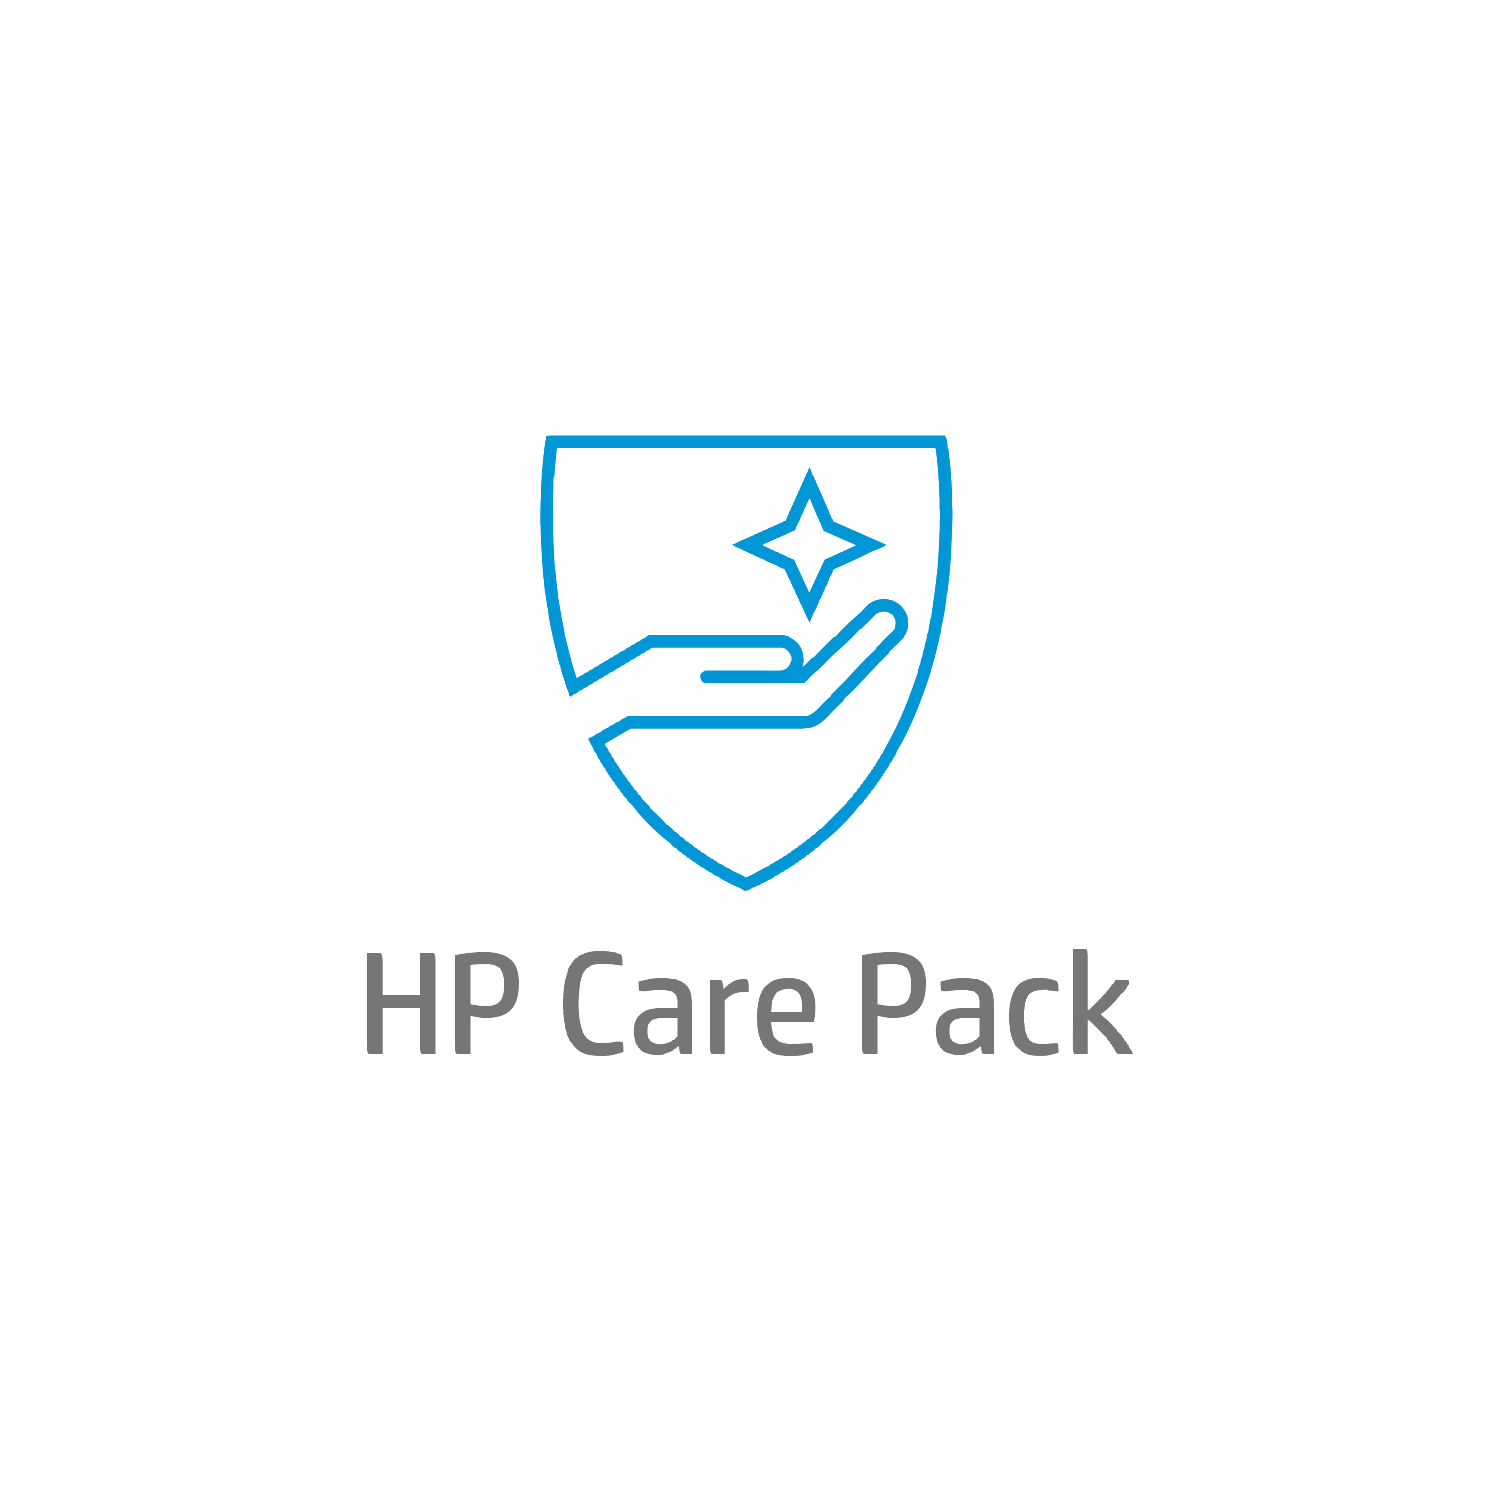 Bild von HP Care 1 Jahr Hardware-Support nach der Garantiezeit Hardware-Support für Notebooks, Active Care, Remote und vor Ort, Nach Garantieablauf, Standardarbeitstage - 9 Stunden, 1 Jahr, Reaktion am nächsten Arbeitstag